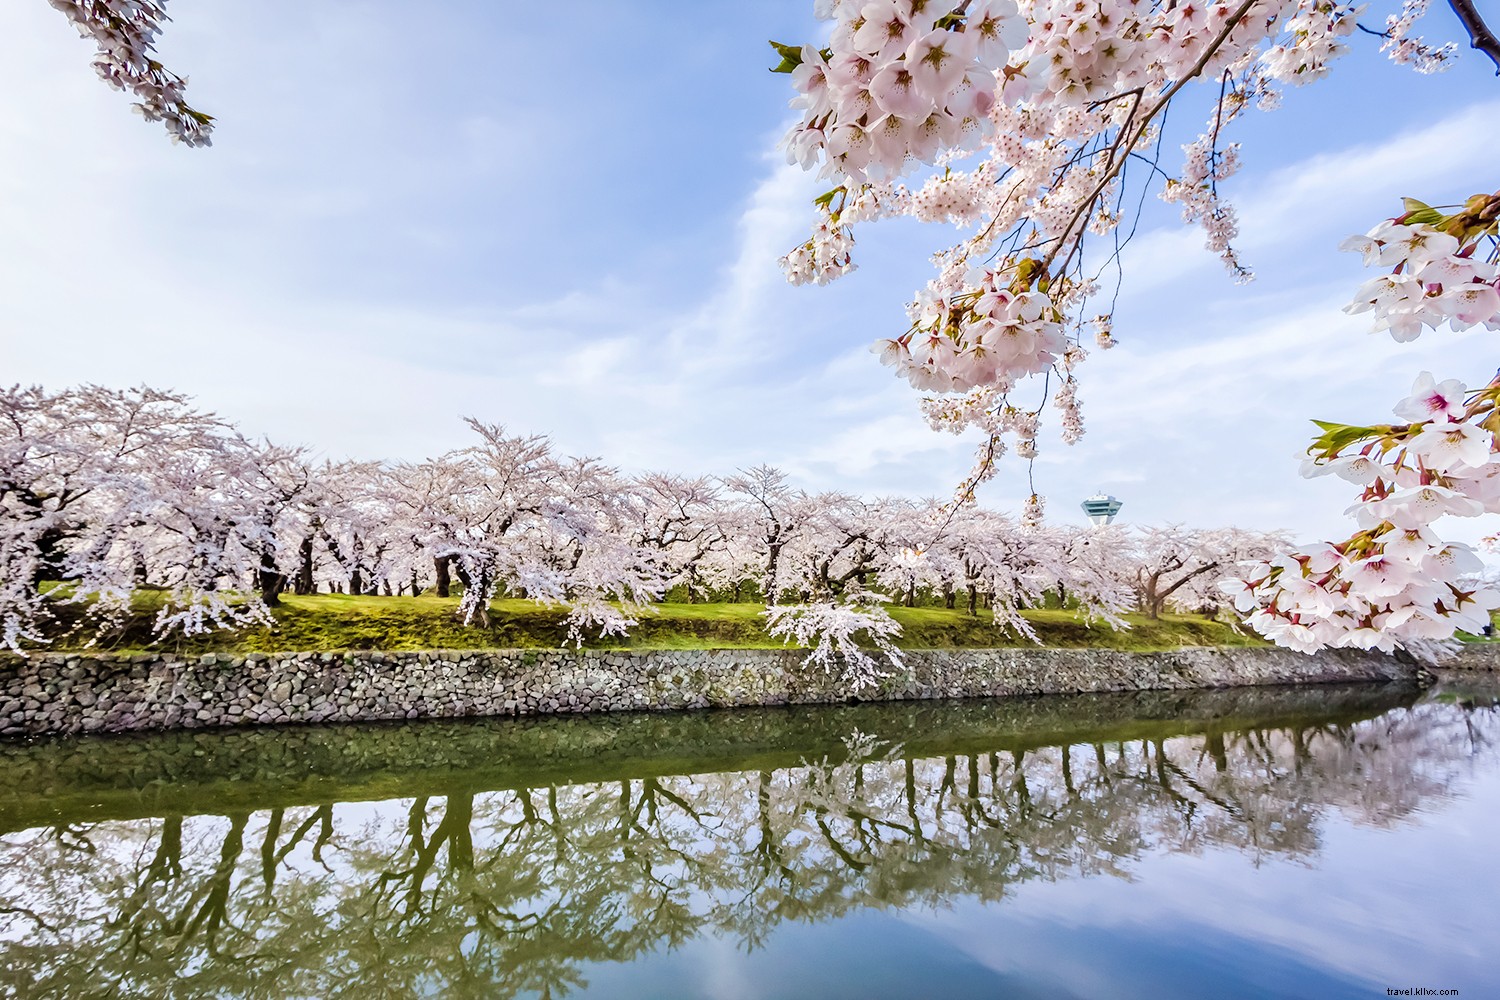 Les meilleurs endroits pour voir les cerisiers en fleurs dans le monde 